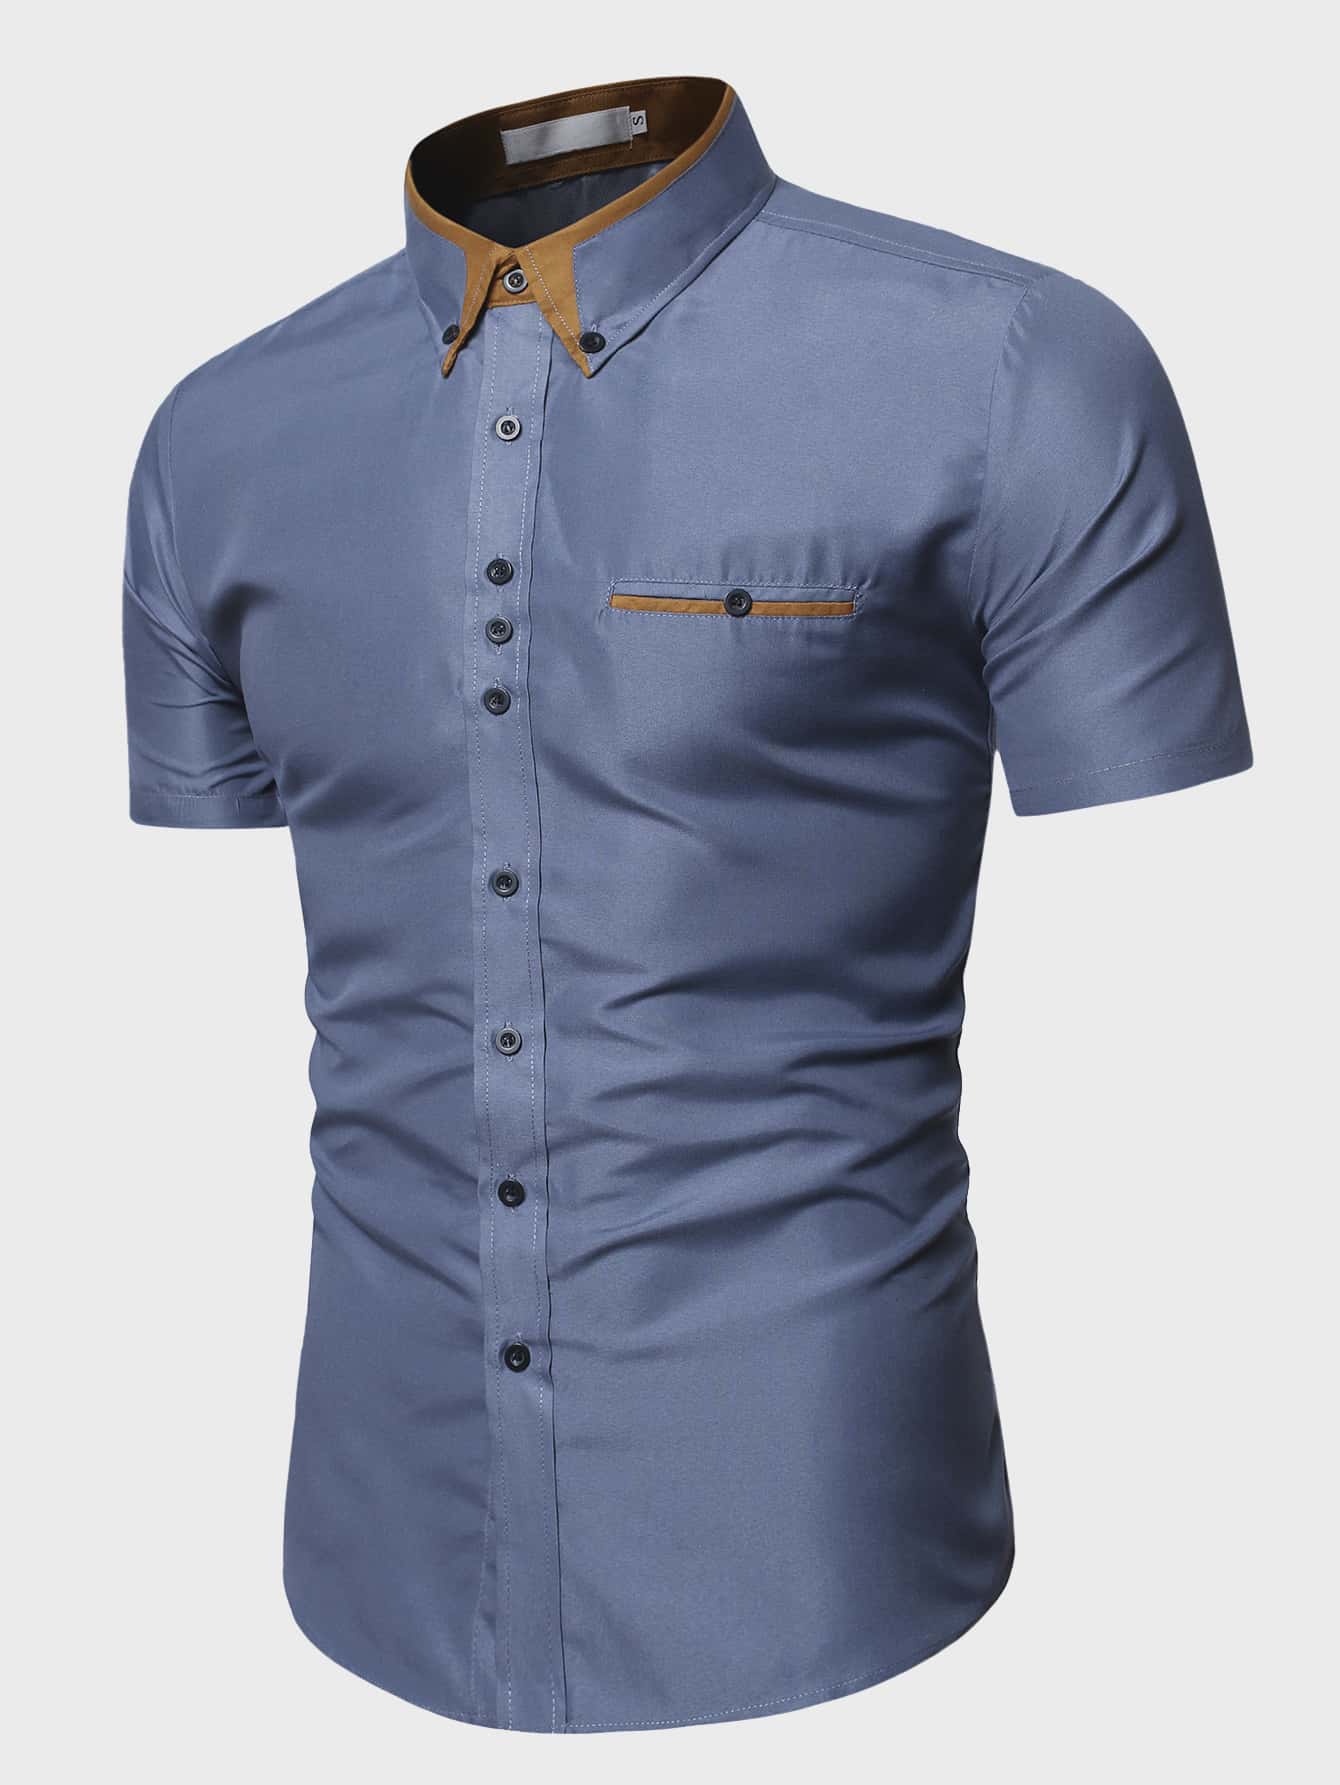 Contrast Collar Button Up Shirt